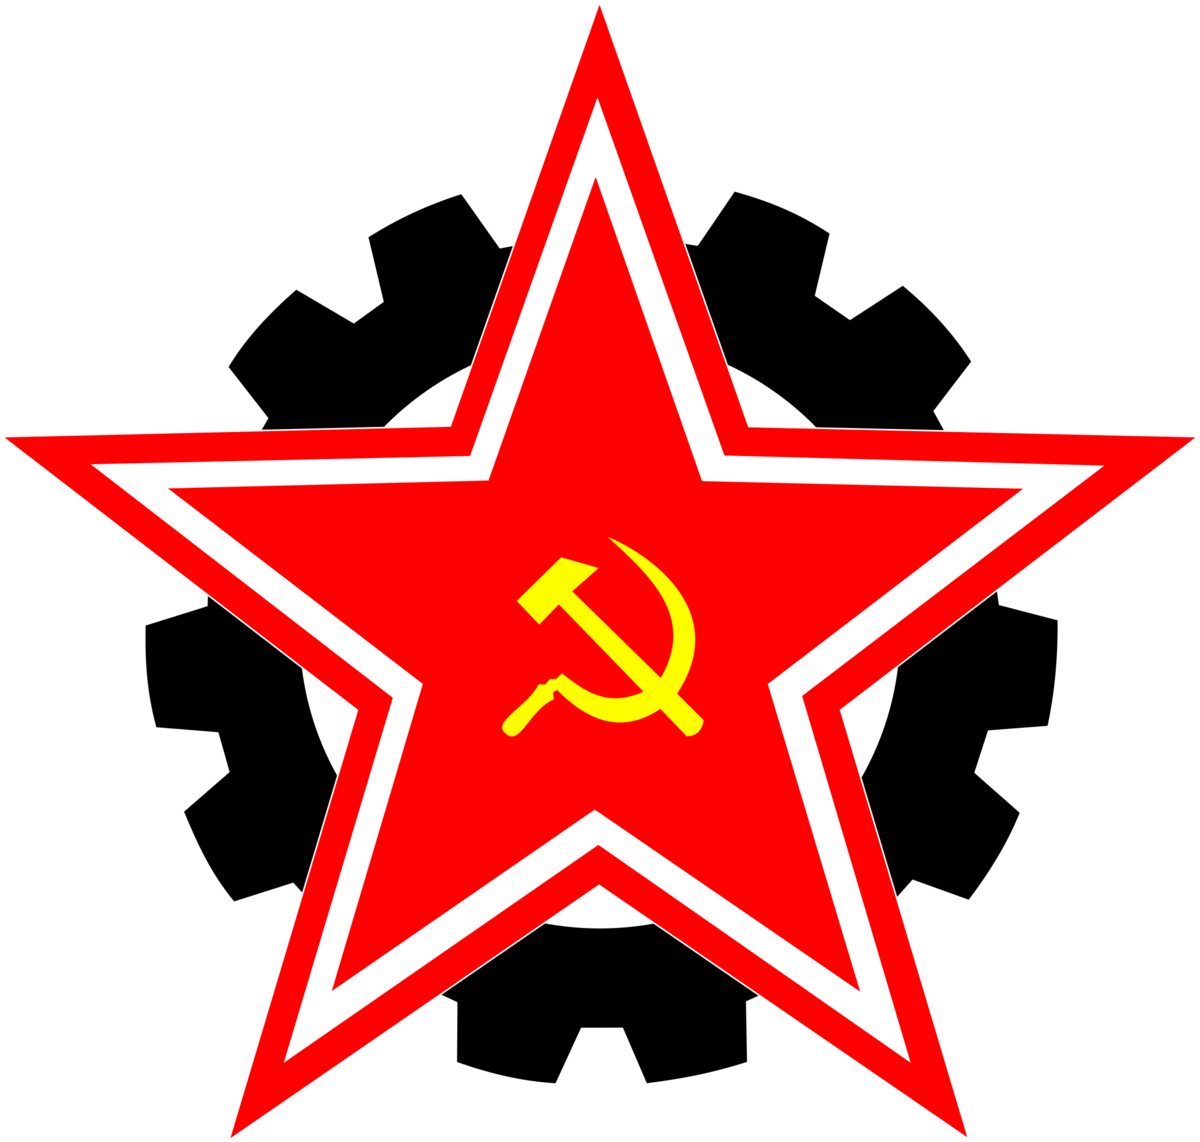 Союз большевиков